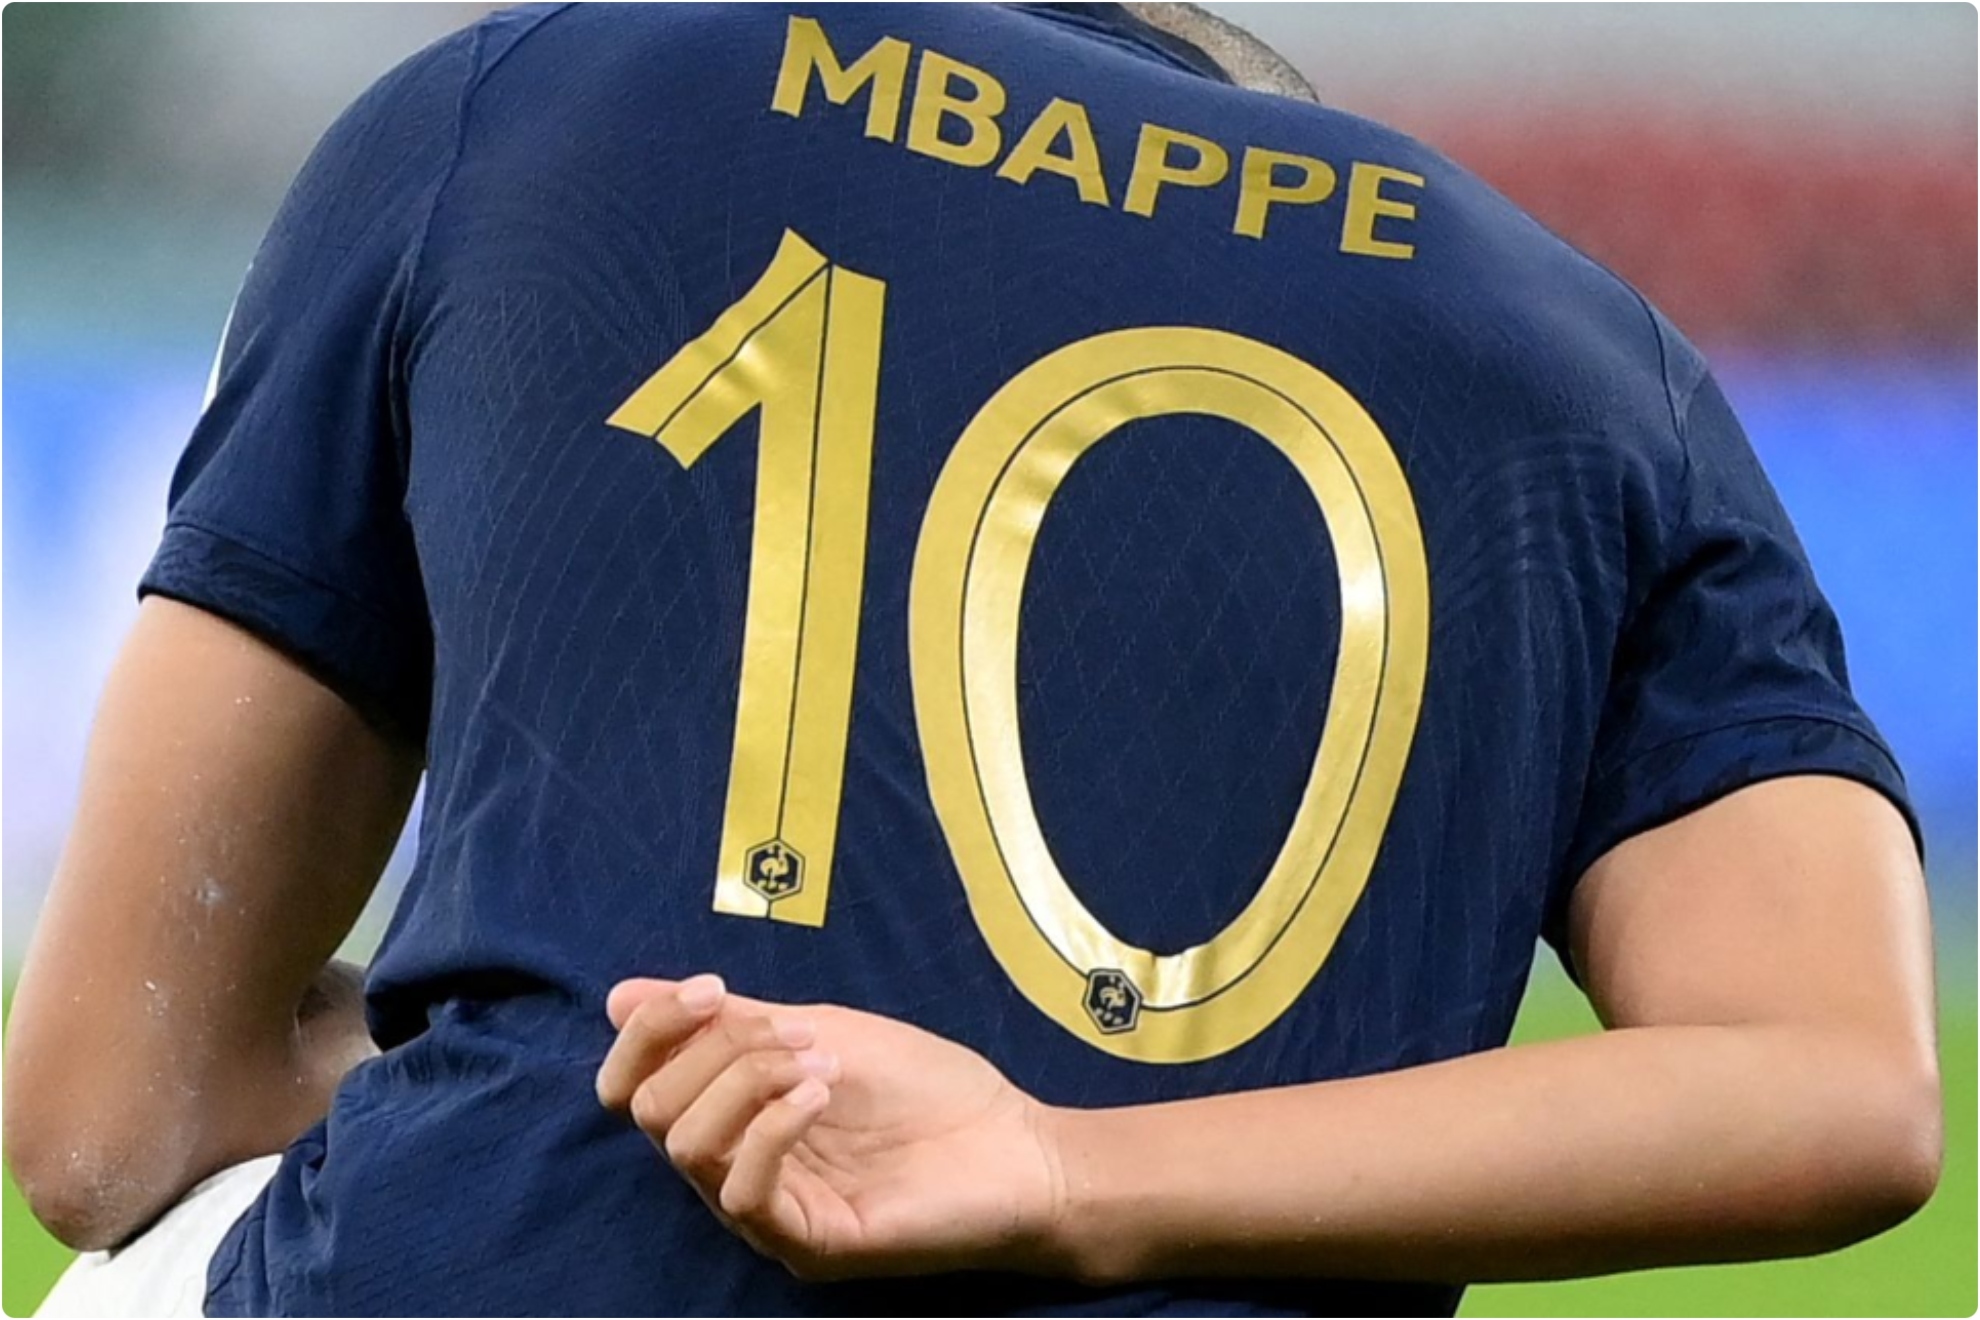 Mbappé, los récords que tiene a tiro y el que nunca podrá ya alcanzar